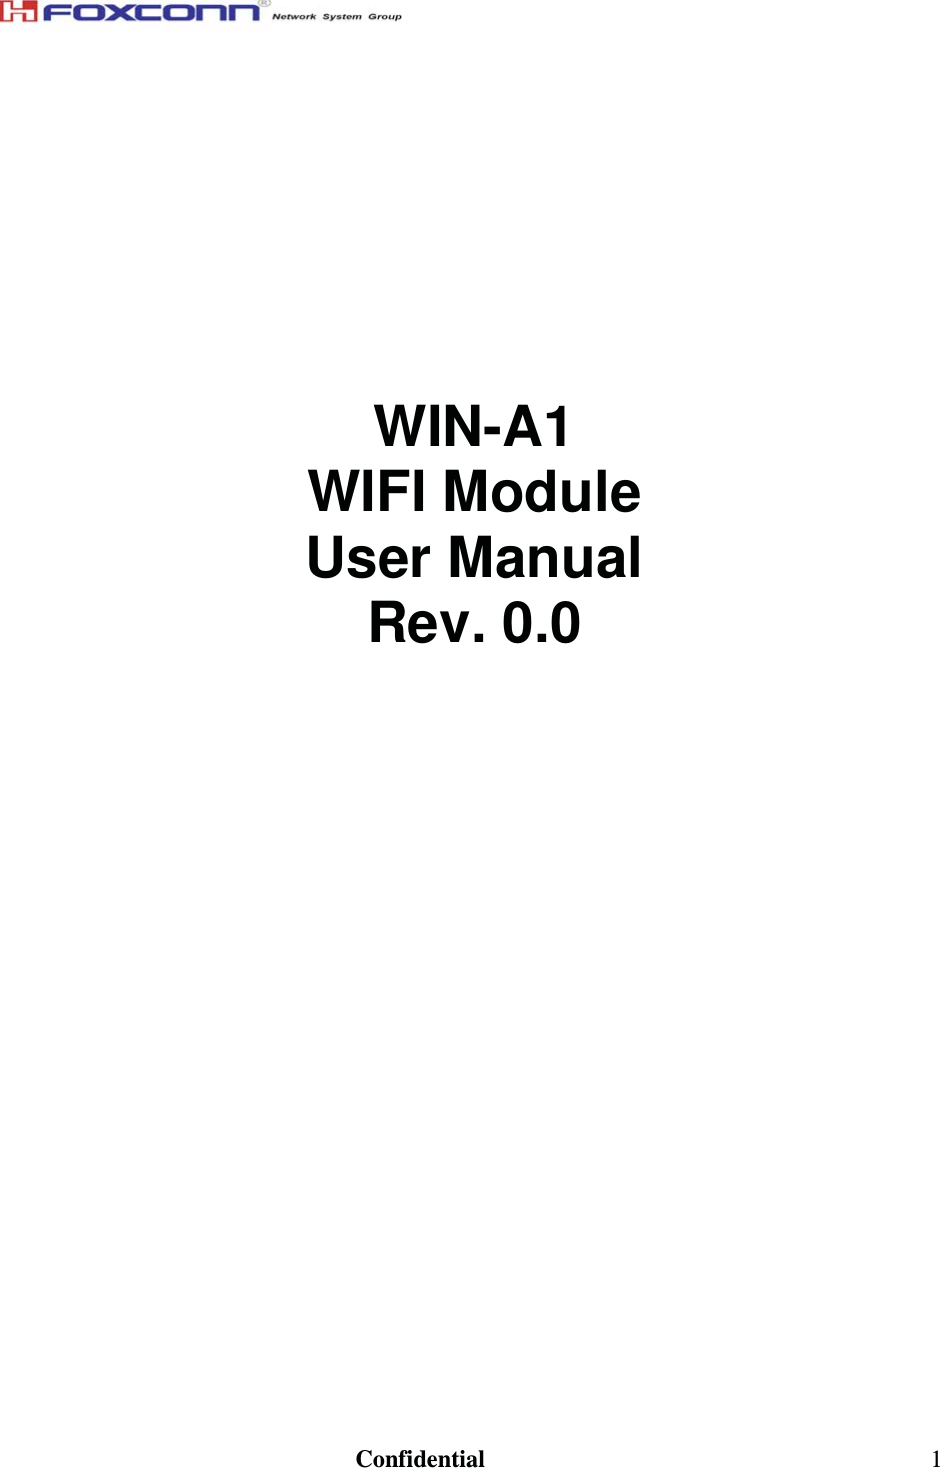                                                                               Confidential  1                                                        WIN-A1  WIFI Module  User Manual  Rev. 0.0                                